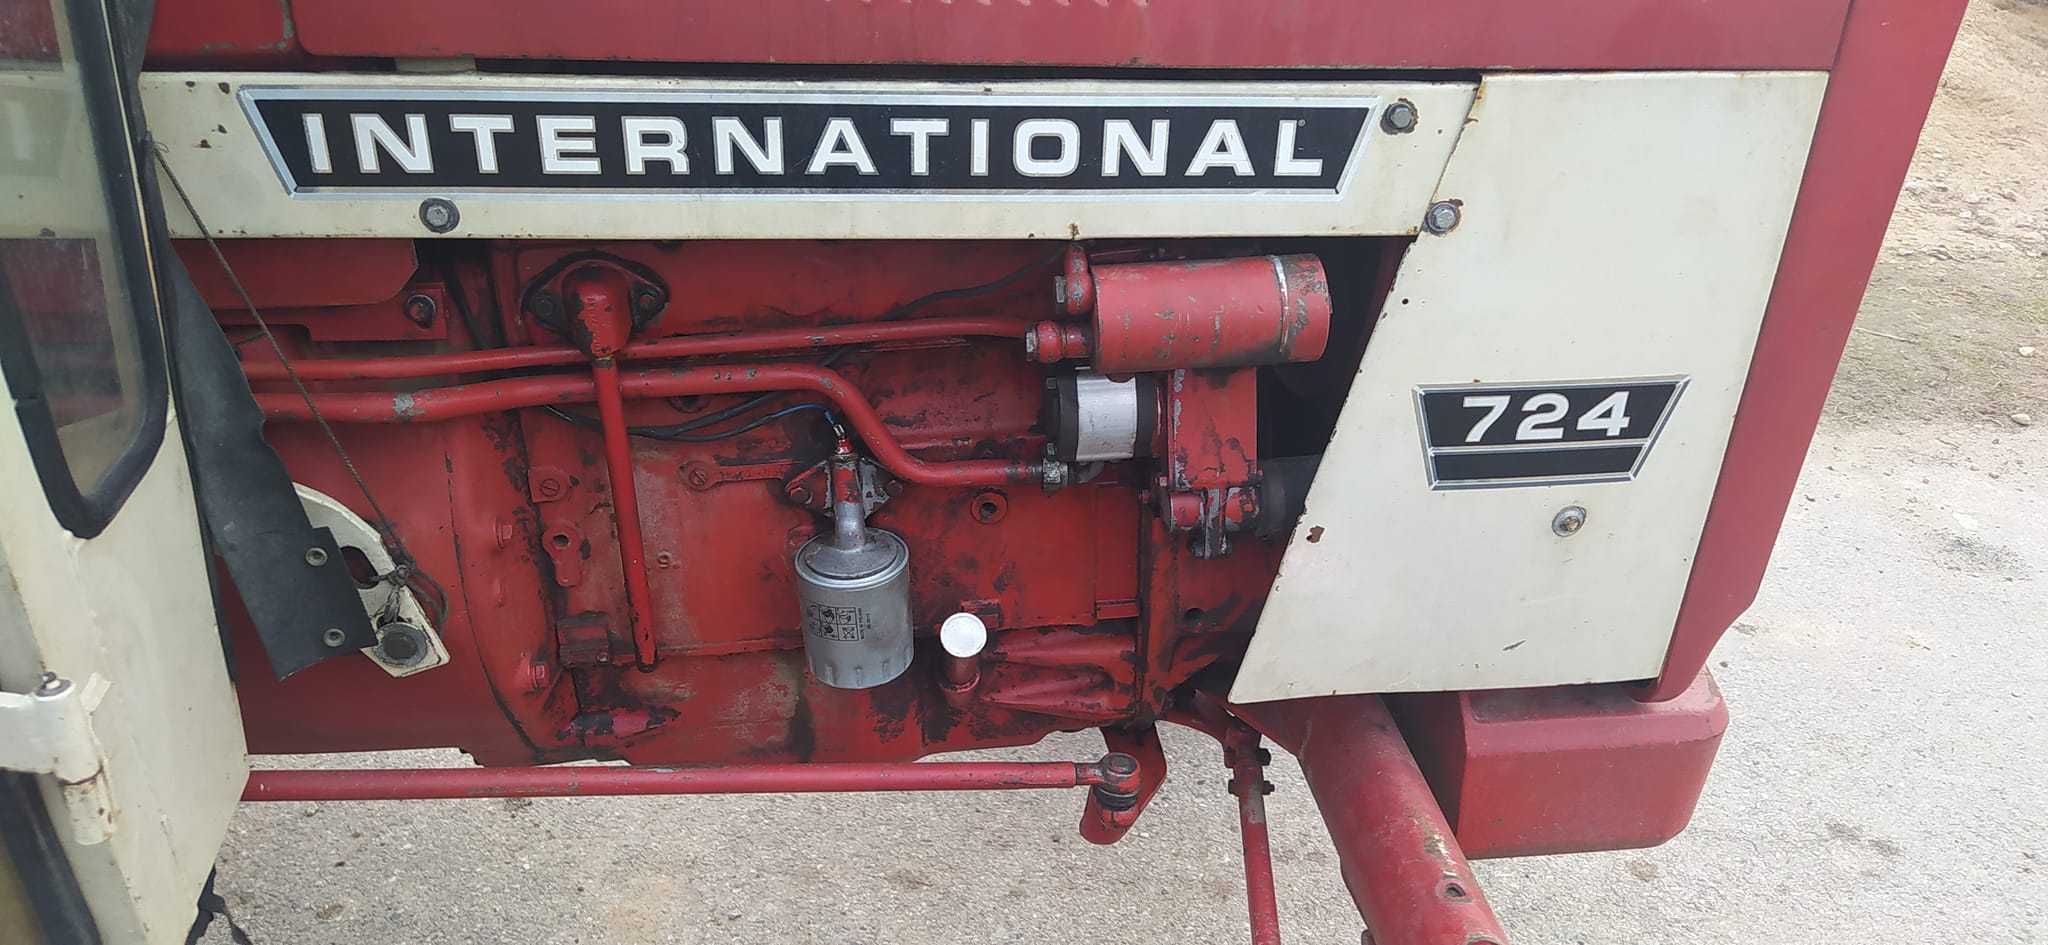 Traktor International 724, rocznik 1974.  67 km